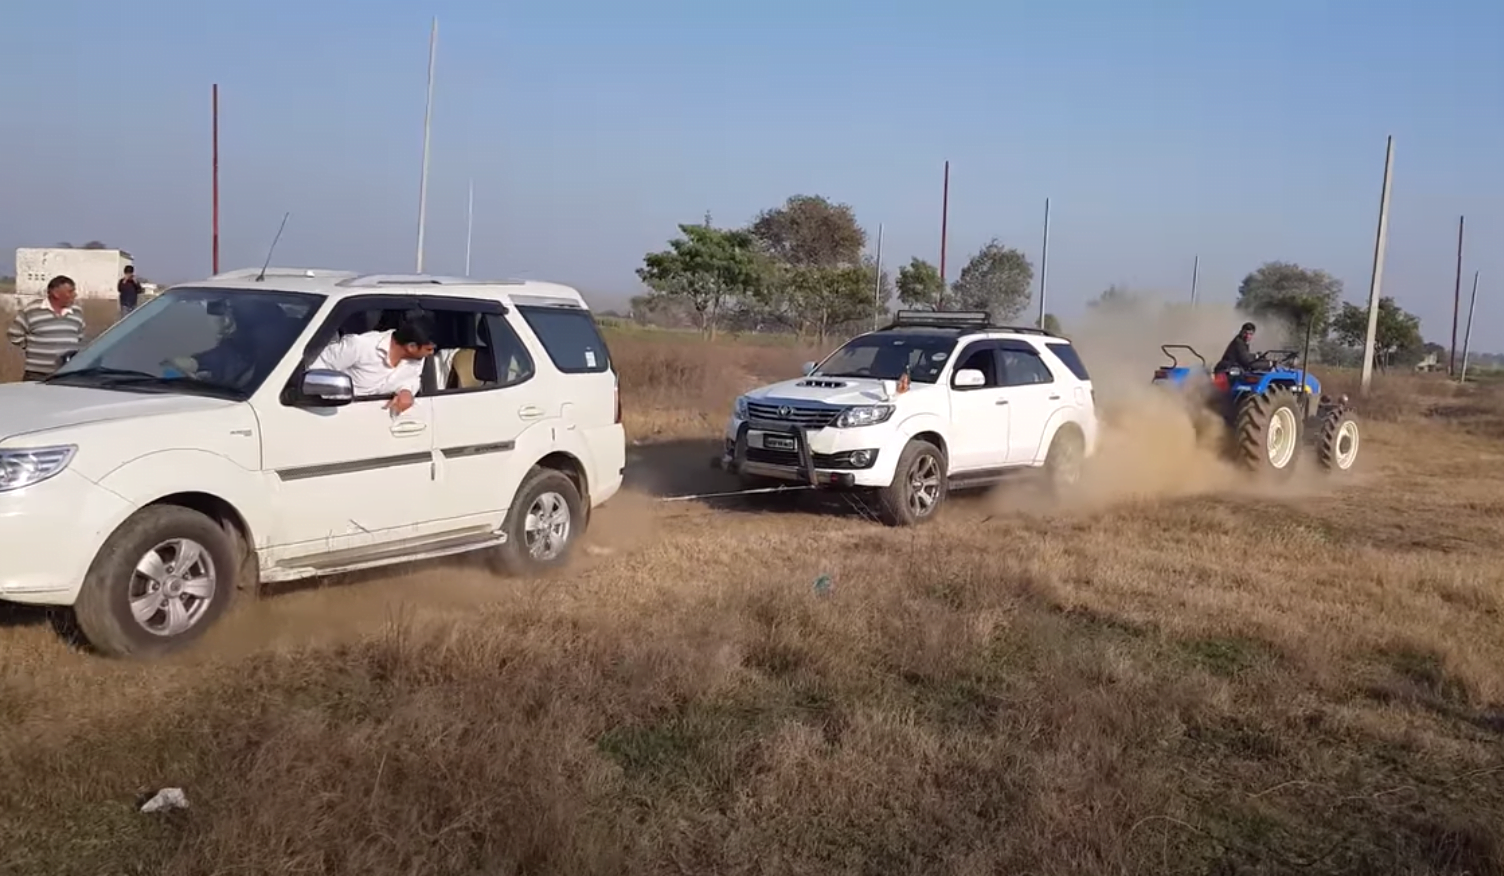 Tata Safari Vs Toyota Fortuner